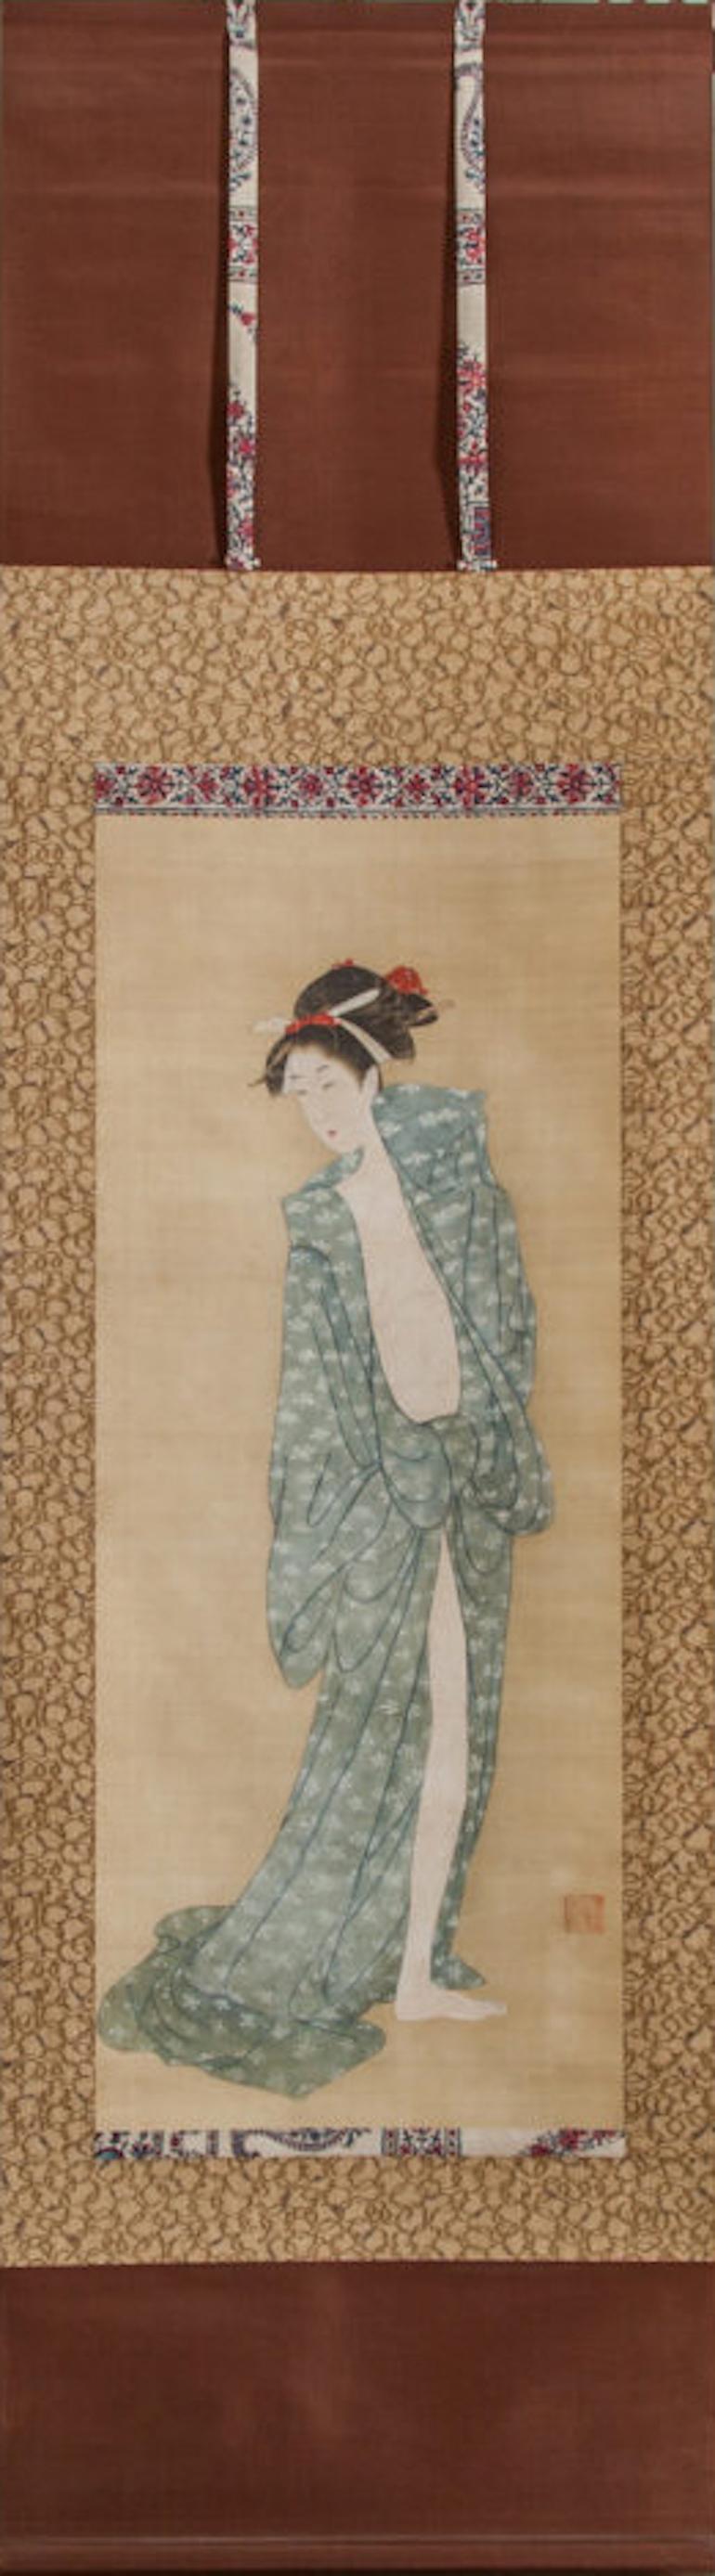 Rouleau japonais du début du 19e siècle : Bijin après le bain en été. Peint en pigments sur soie. La signature se lit : Yamauchi Sentsu.
Japon, peint vers 1800, remonté vers 1900.
Mesures : Peinture 37